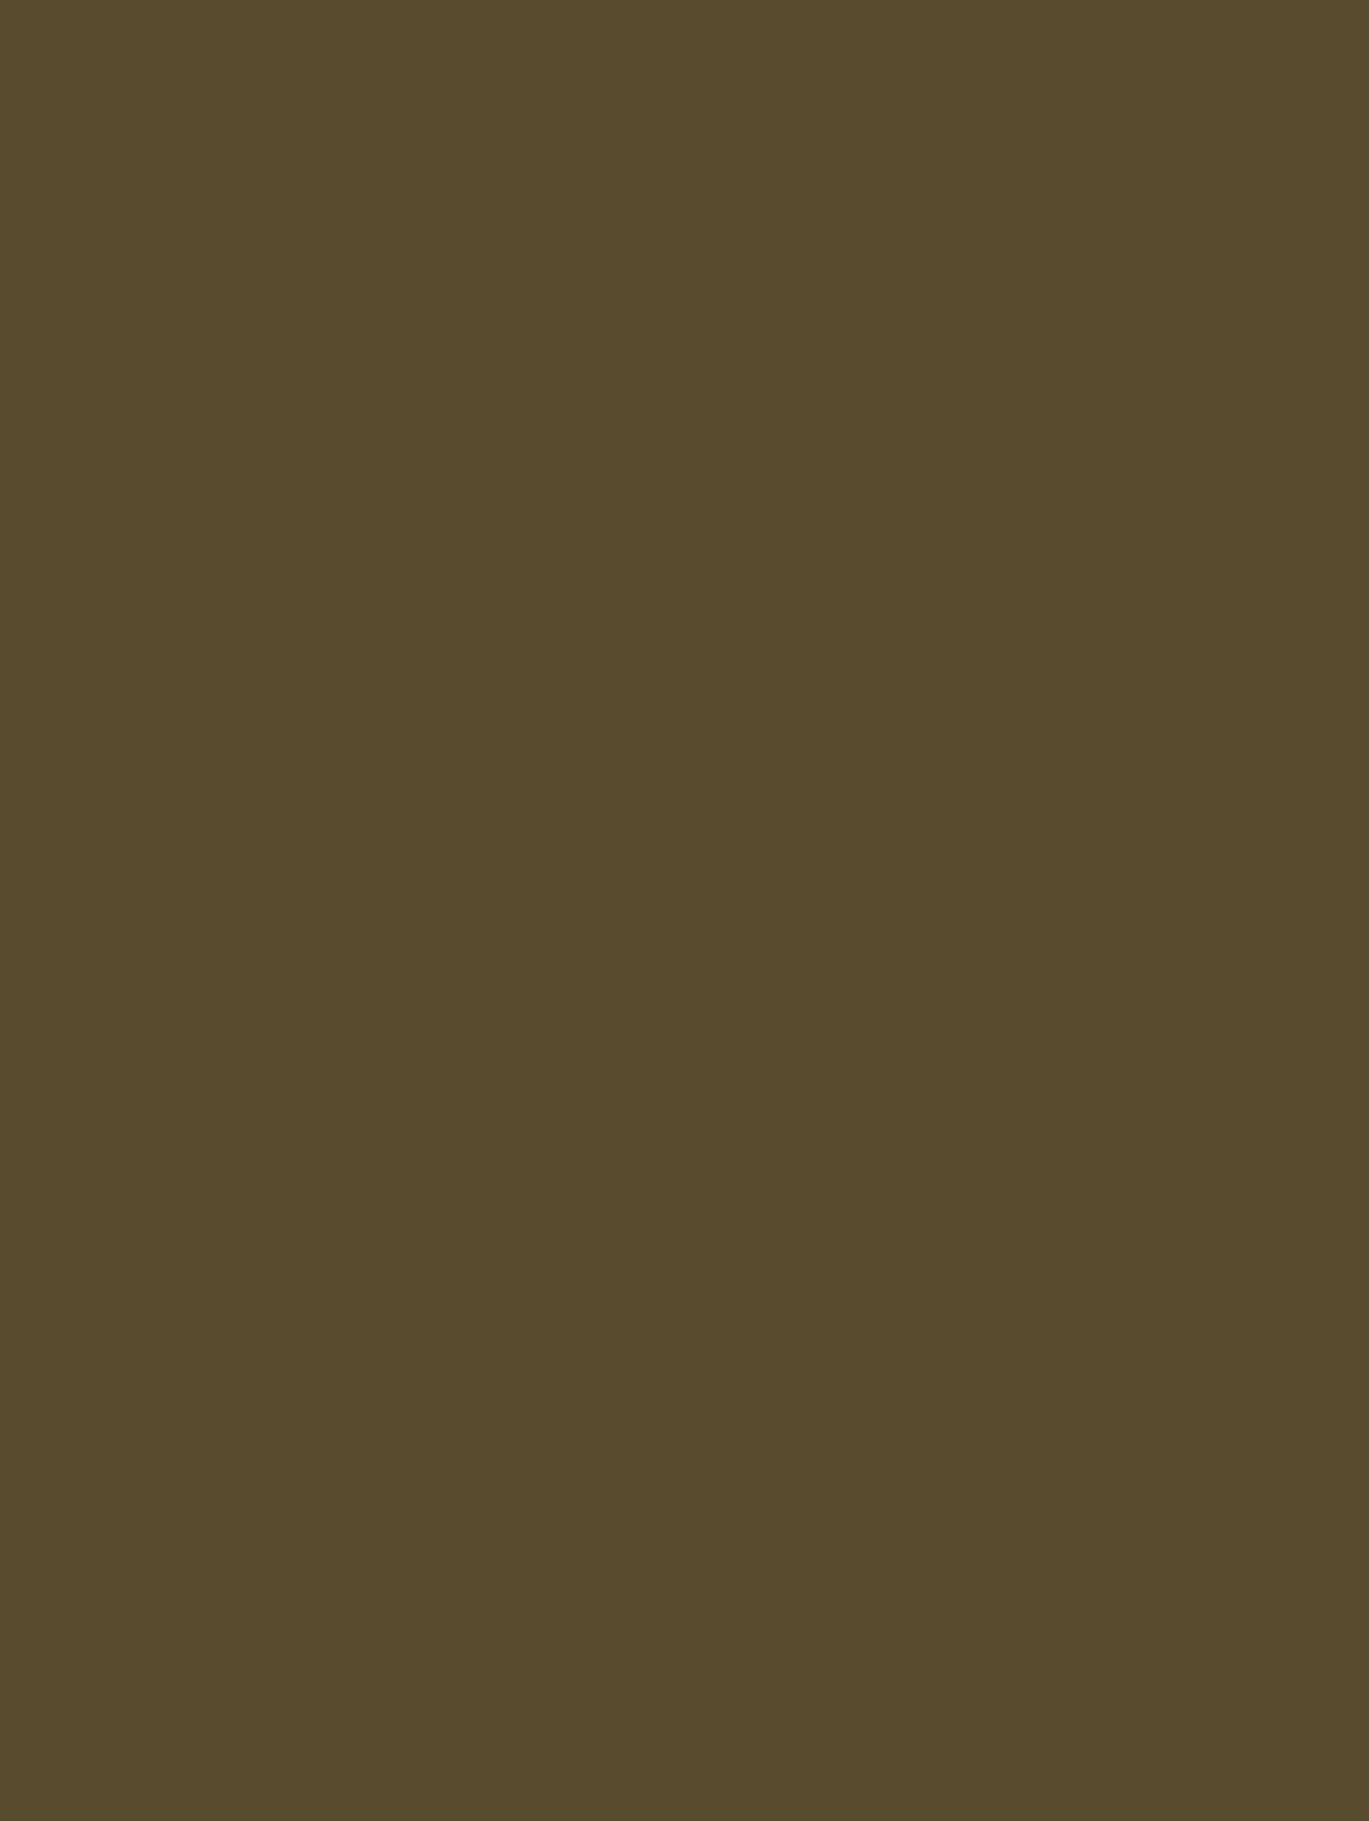 Михаил Ломоносов. Мозаика «Портрет Петра I». 1754. Государственный Эрмитаж, Санкт-Петербург